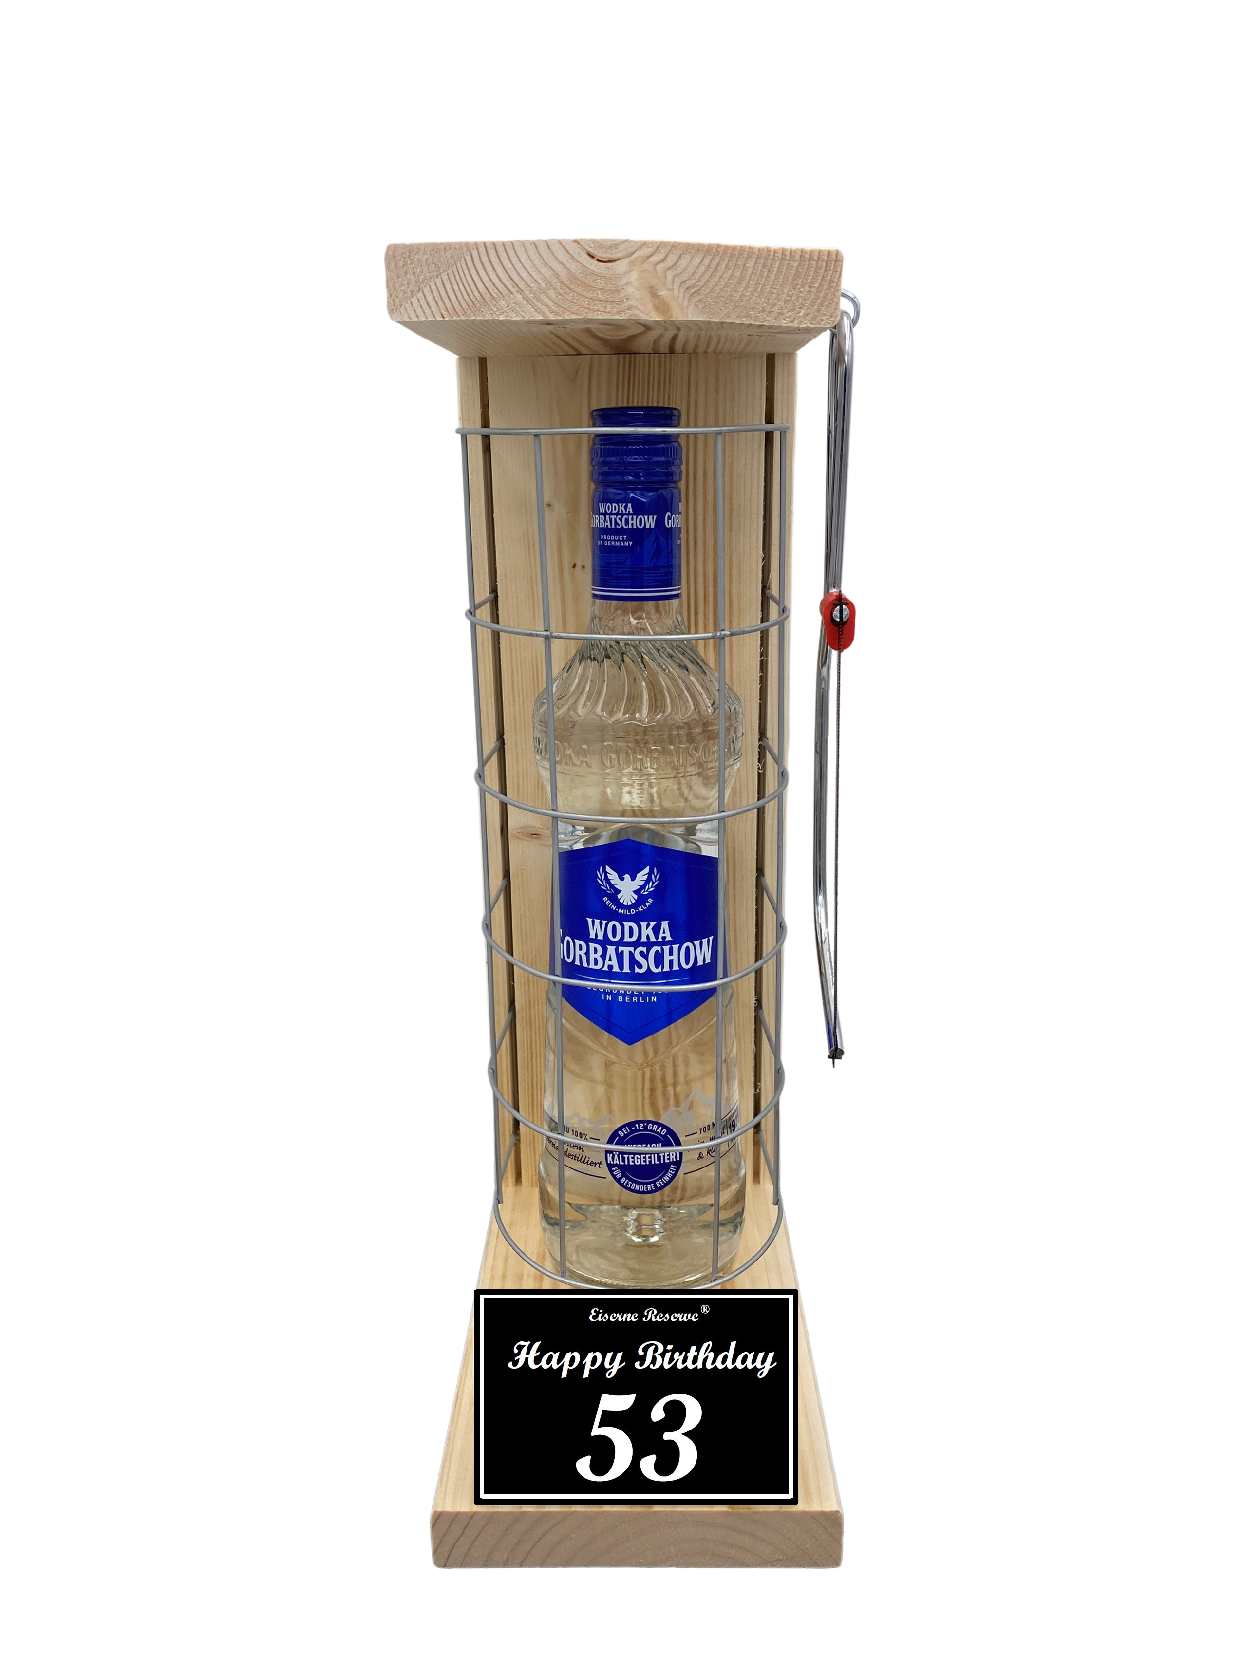 Wodka Geschenk zum 53 Geburtstag - Eiserne Reserve Gitterkäfig